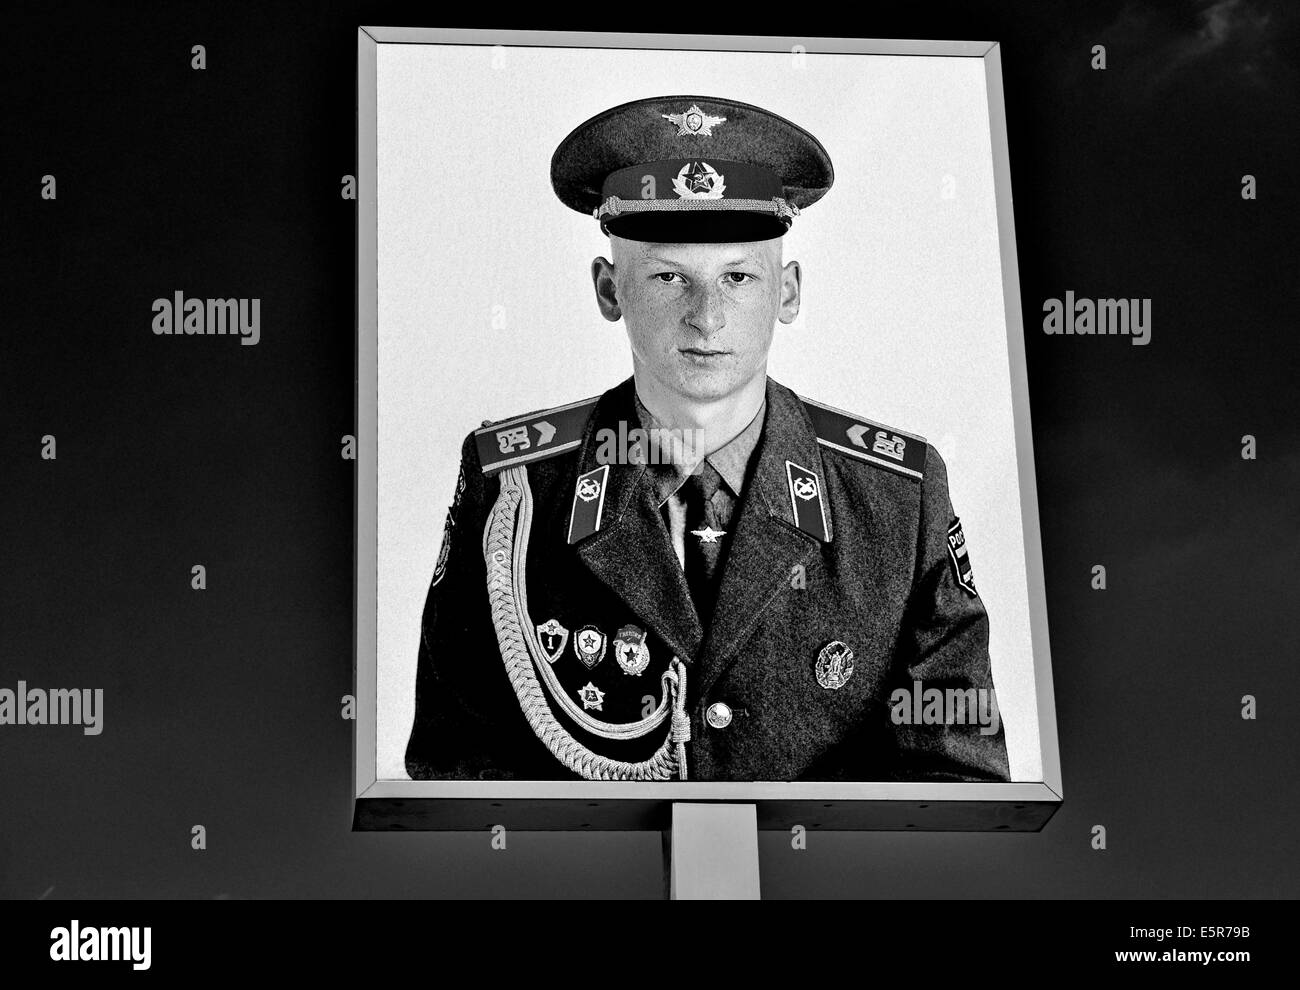 Deutschland, Berlin: Sowjet-Soldat-Porträt von Frank Thiele am ehemaligen uns Checkpoint Charlie in schwarz / weiß-version Stockfoto